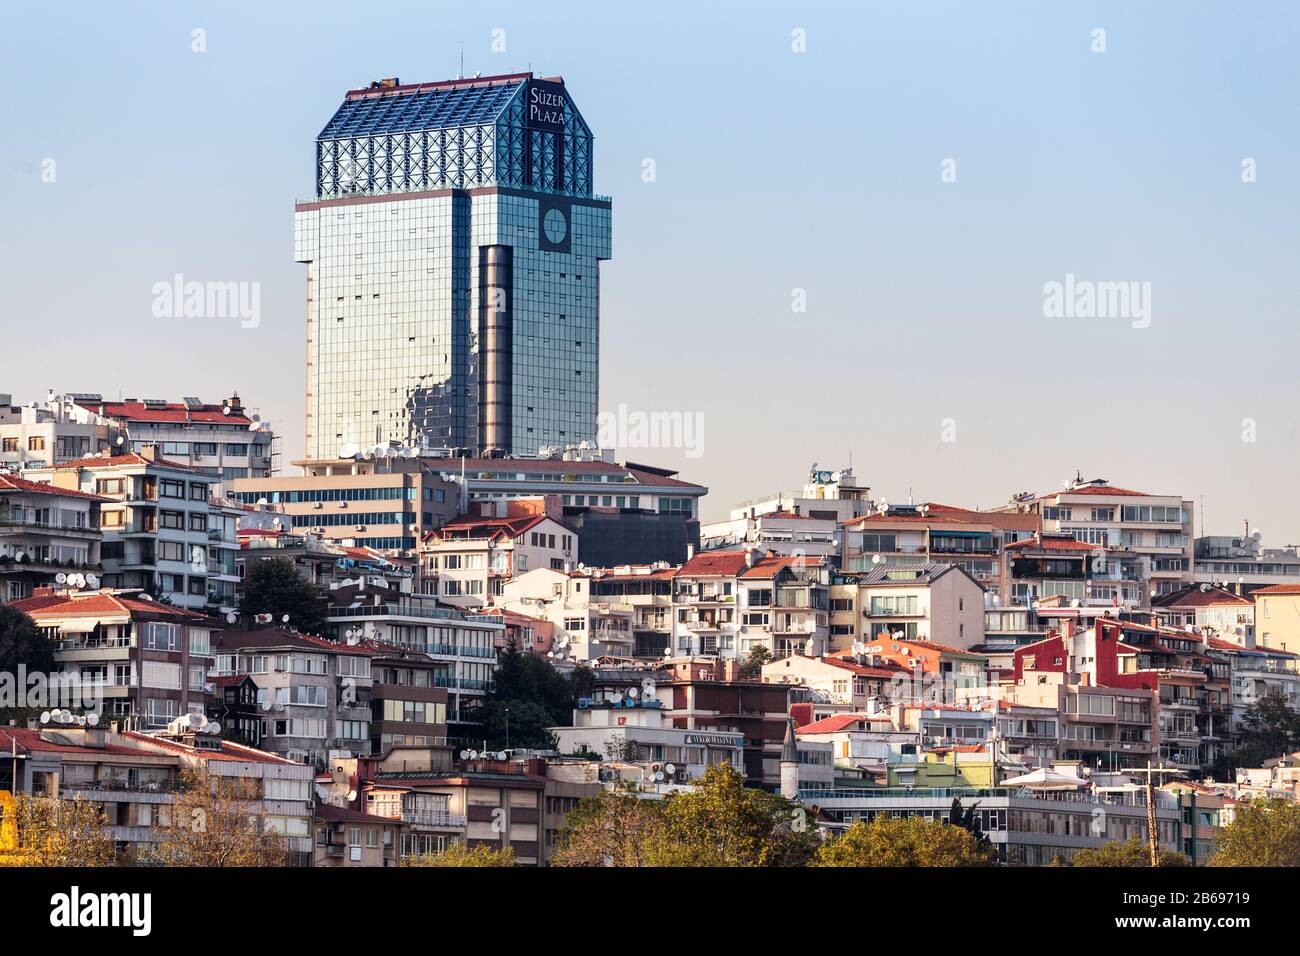 11 SETTEMBRE 2017, TURCHIA, ISTANBUL: Il Suzer Plaza (Gokkafes) hotel di lusso a Istanbul Foto Stock